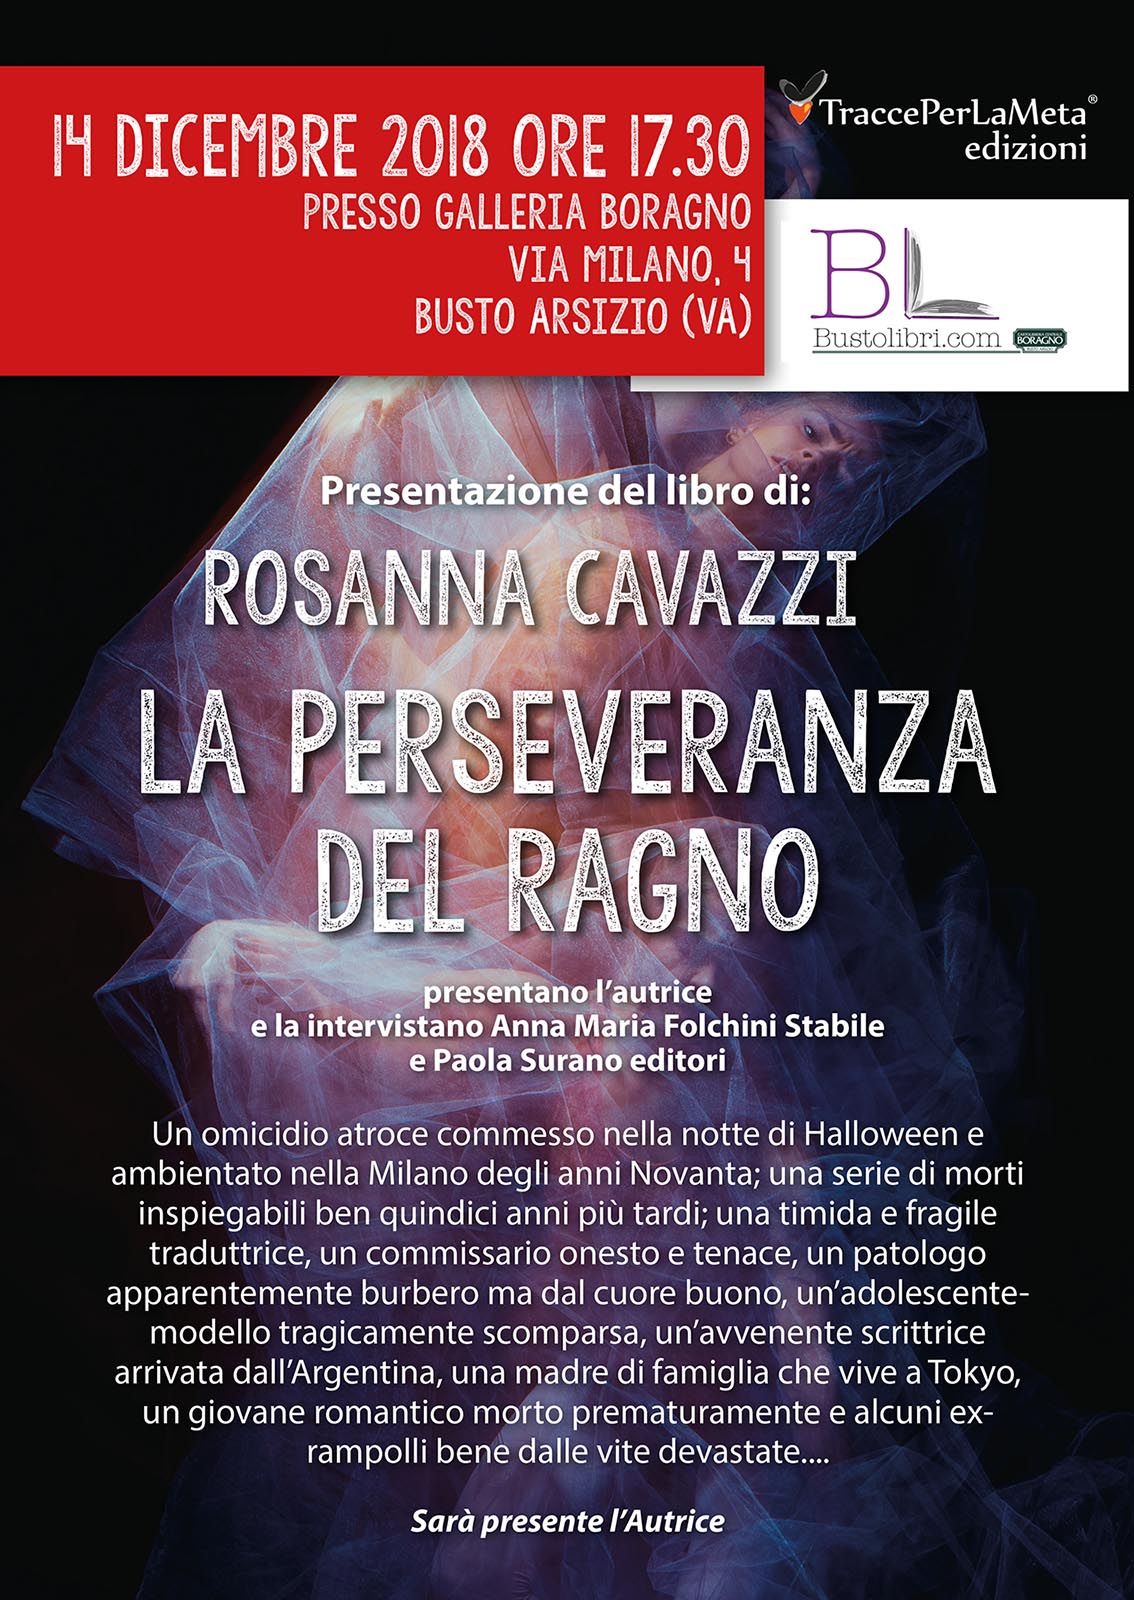 14.12.2018 – Presentazione Libro “La perseveranza del ragno” di Rosanna Cavazzi